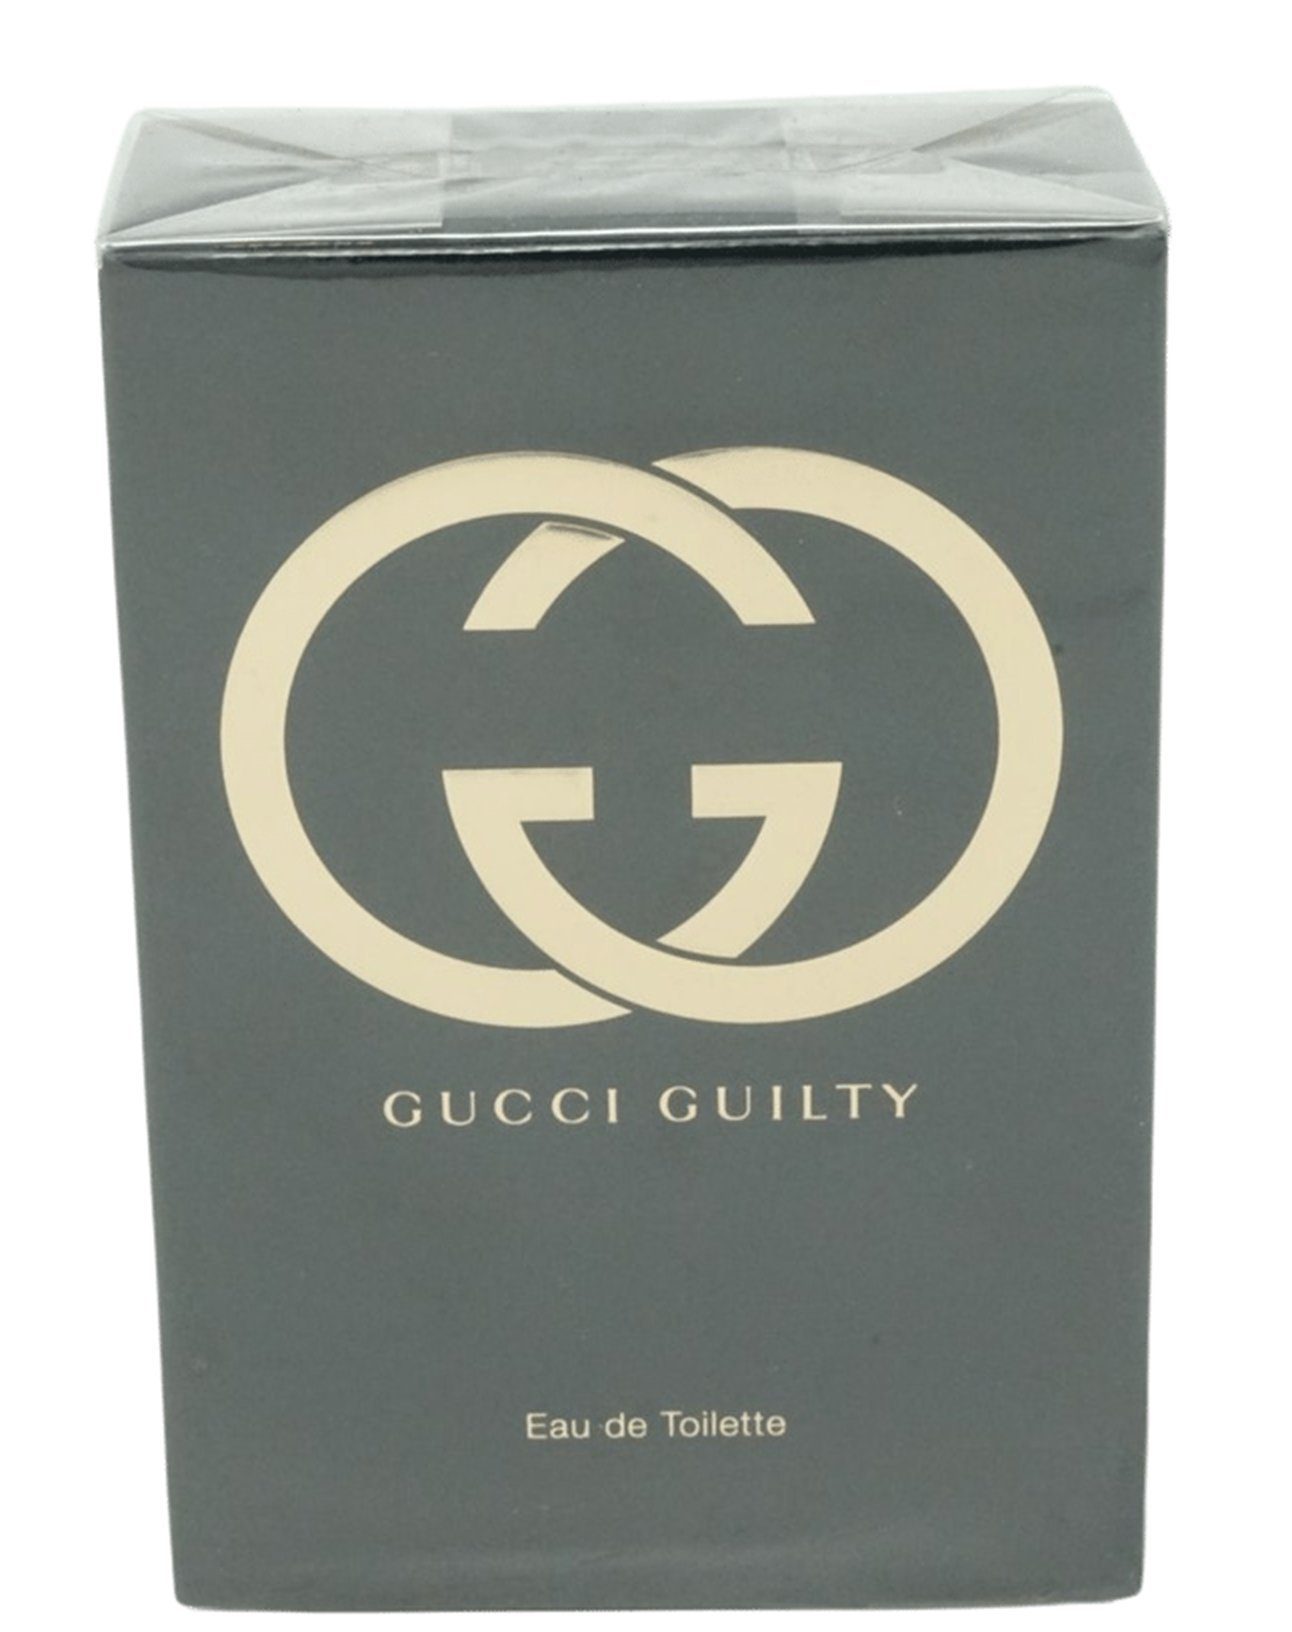 GUCCI de Eau de Gucci Toilette Eau 75ml Spray Toilette Guilty